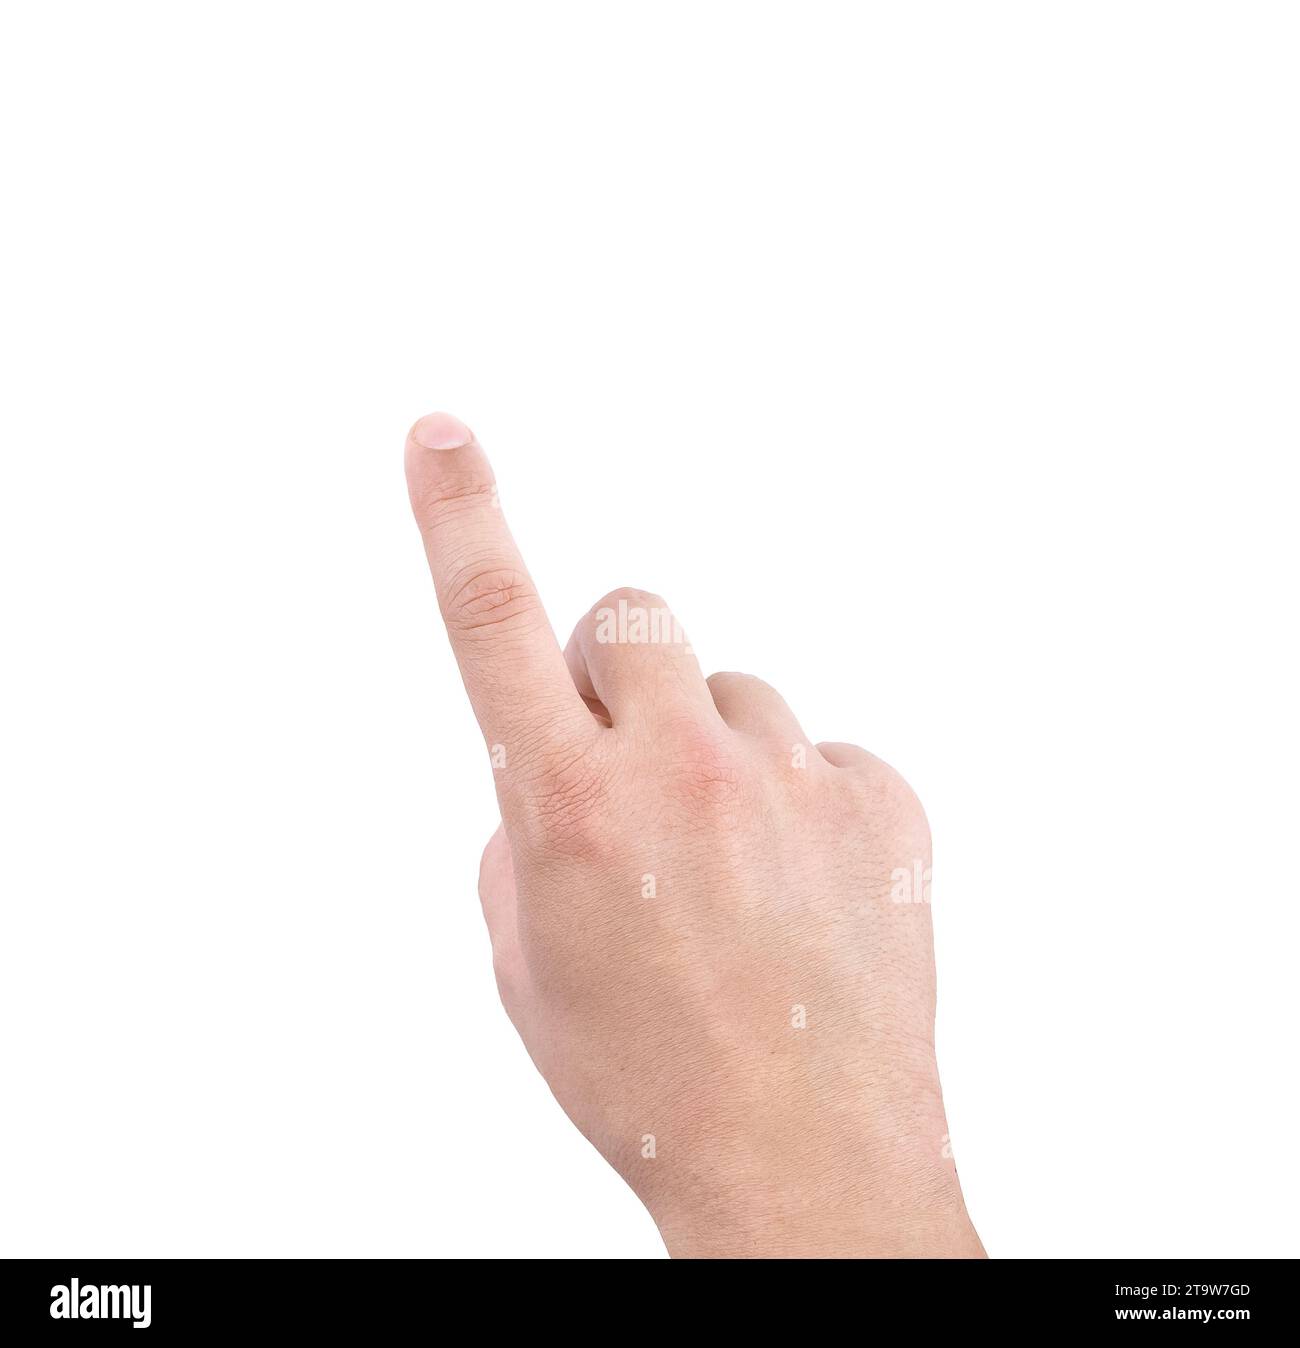 mains d'un homme montrant le numéro un, index sur fond blanc, concept d'écran tactile Banque D'Images